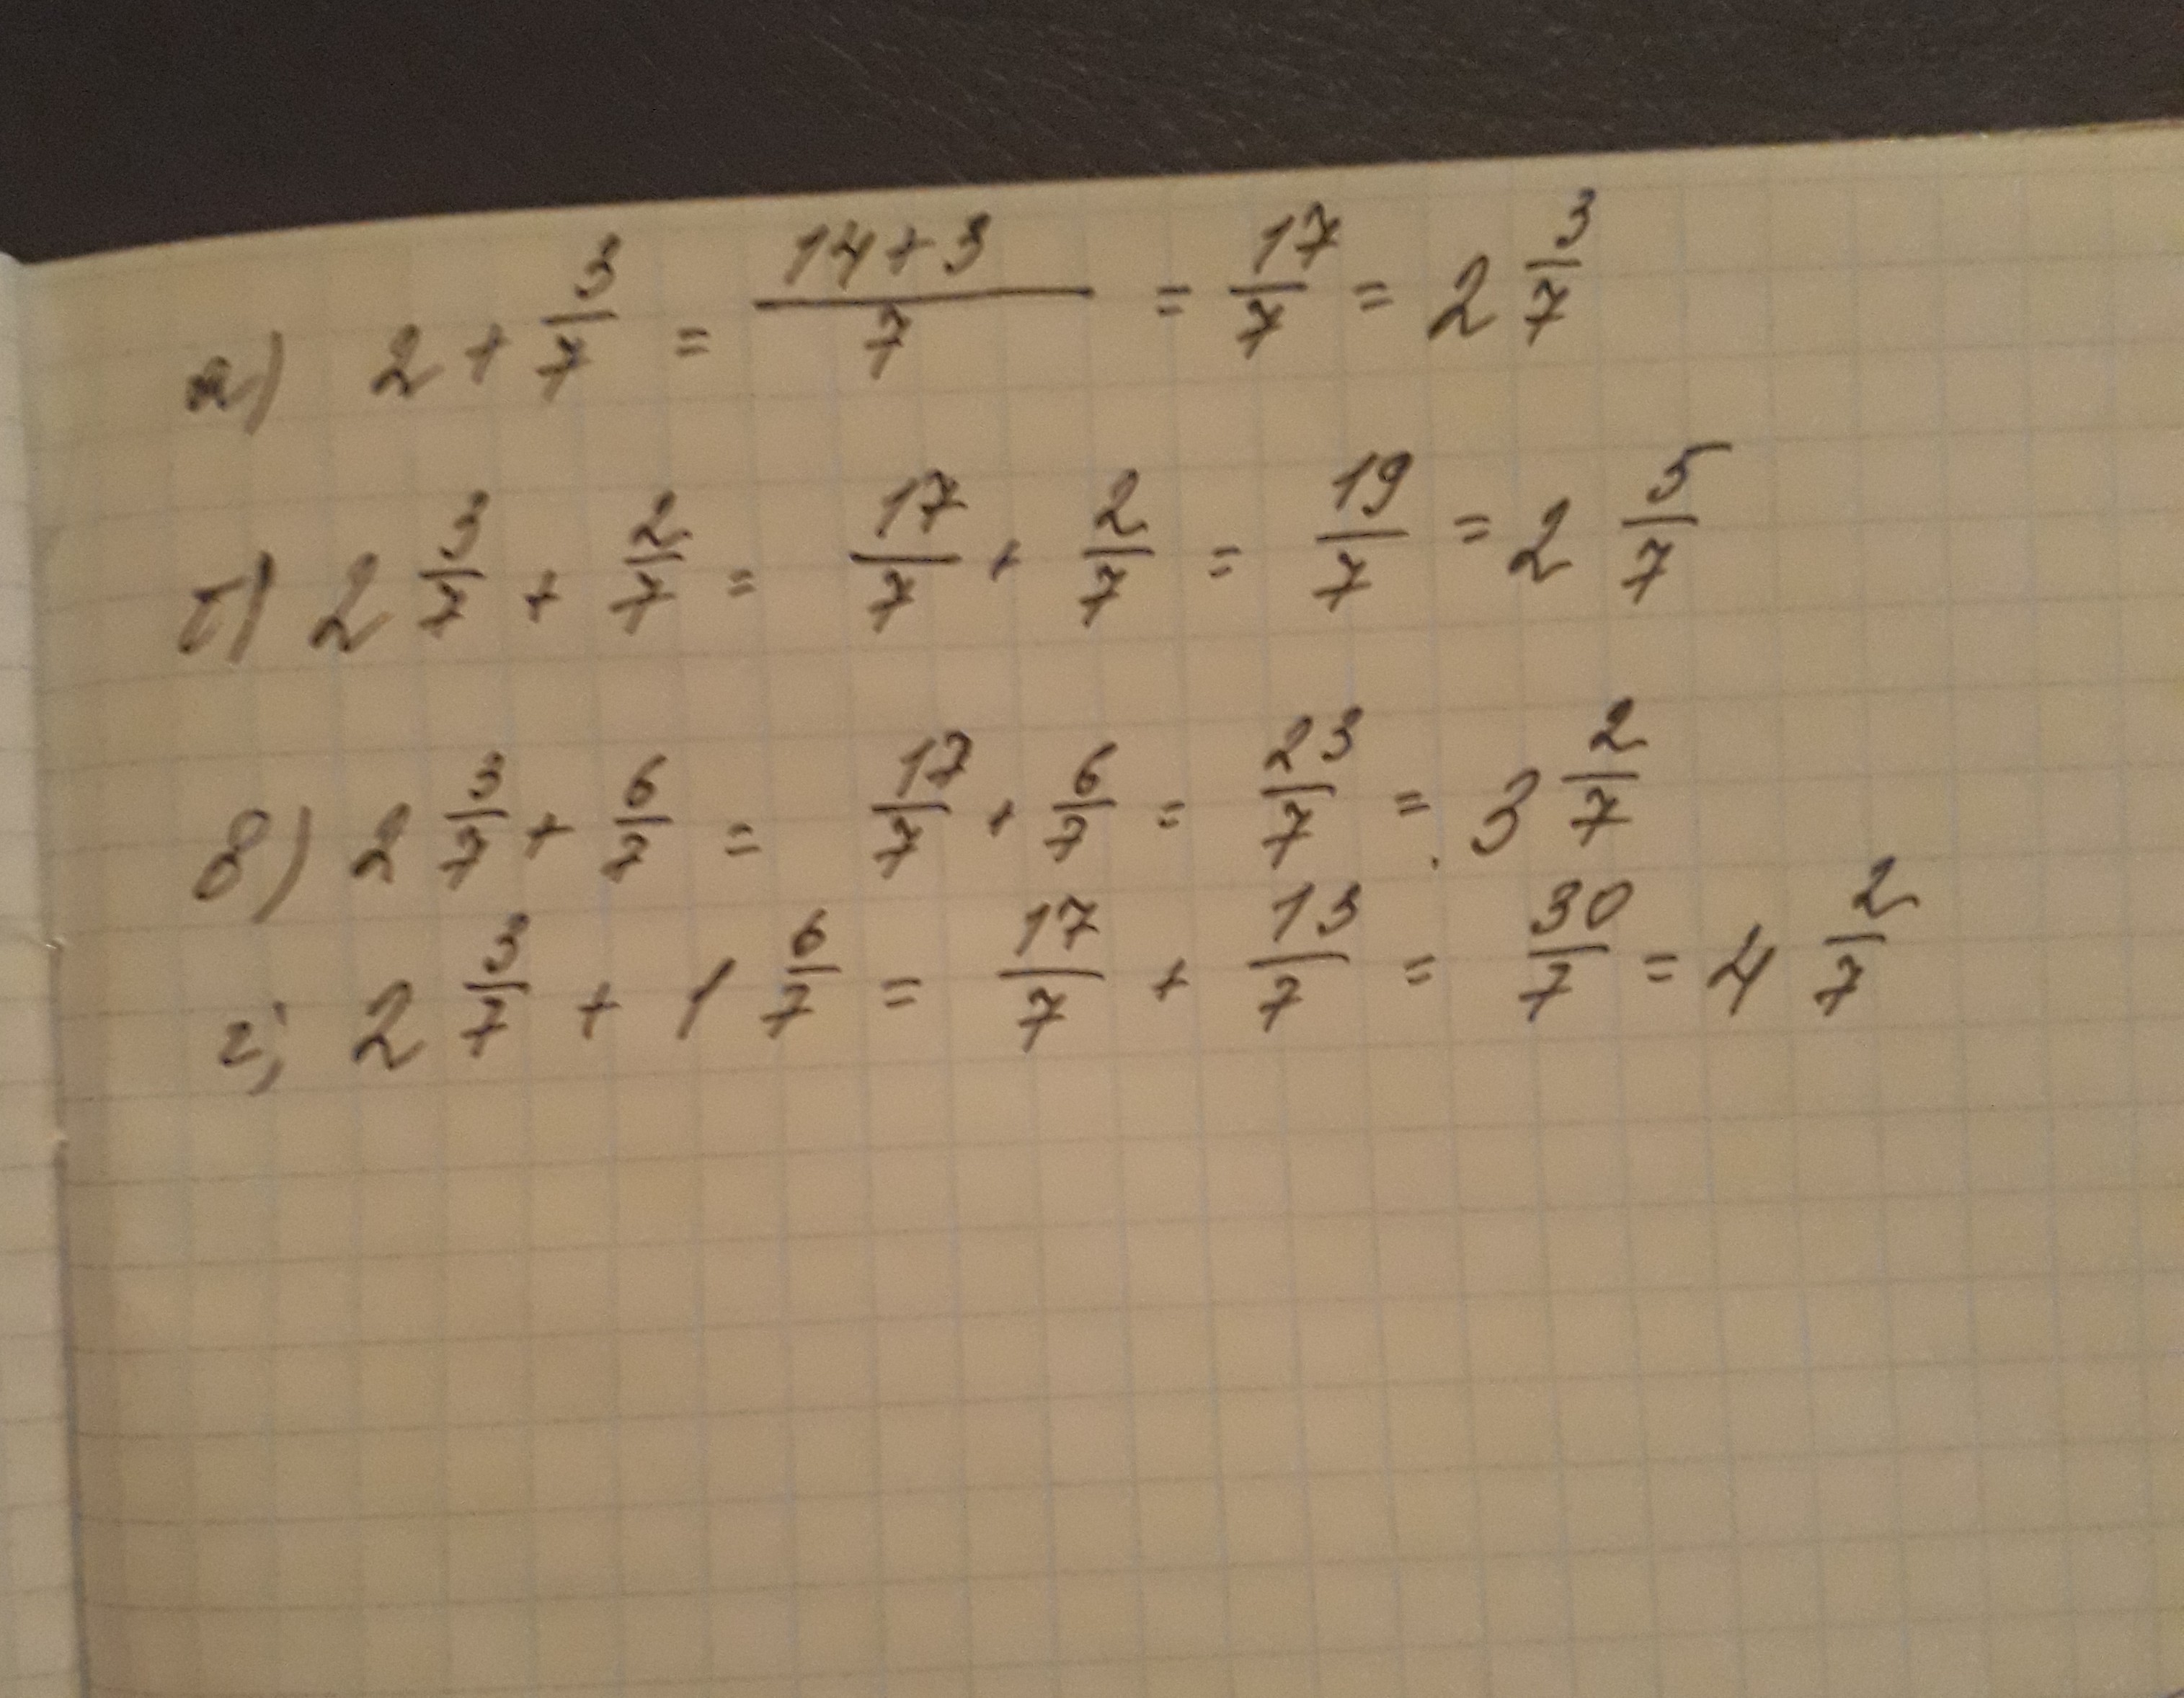 7 2х 3 15. Вычислите 2/7. Вычислите 3/7:2. Вычислите 7 3 + 7 2. (−2)^7⋅6 Вычислите.